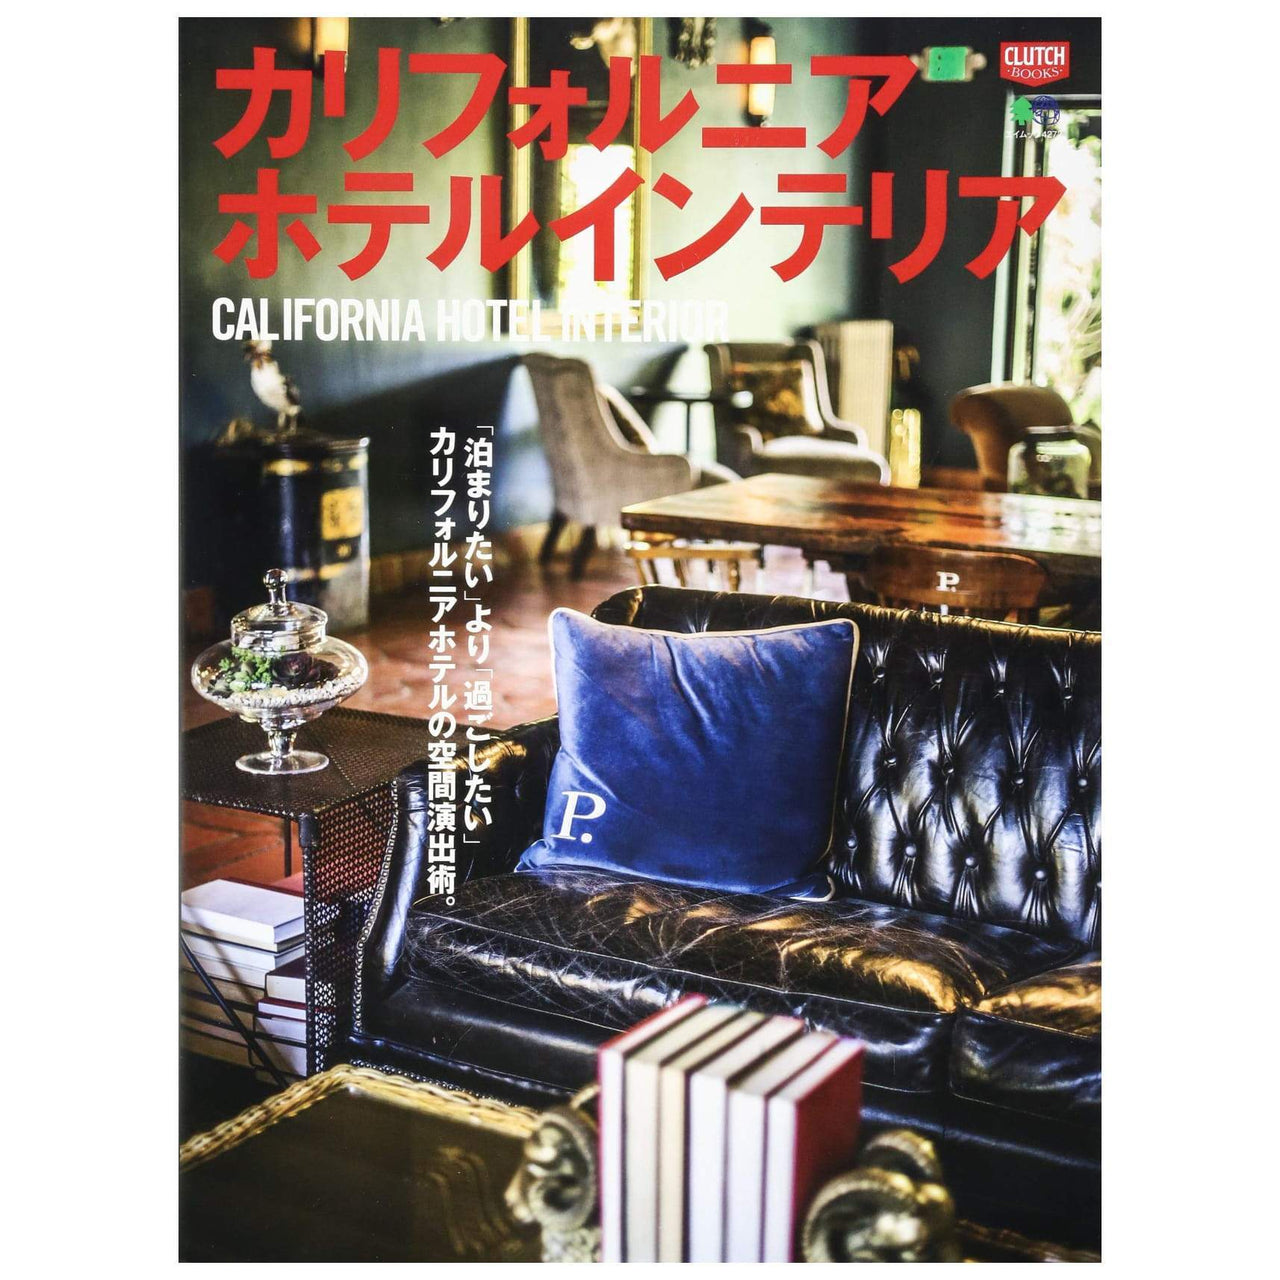 Clutch Books "California Hotel Interior"-Magazine-Clutch Cafe